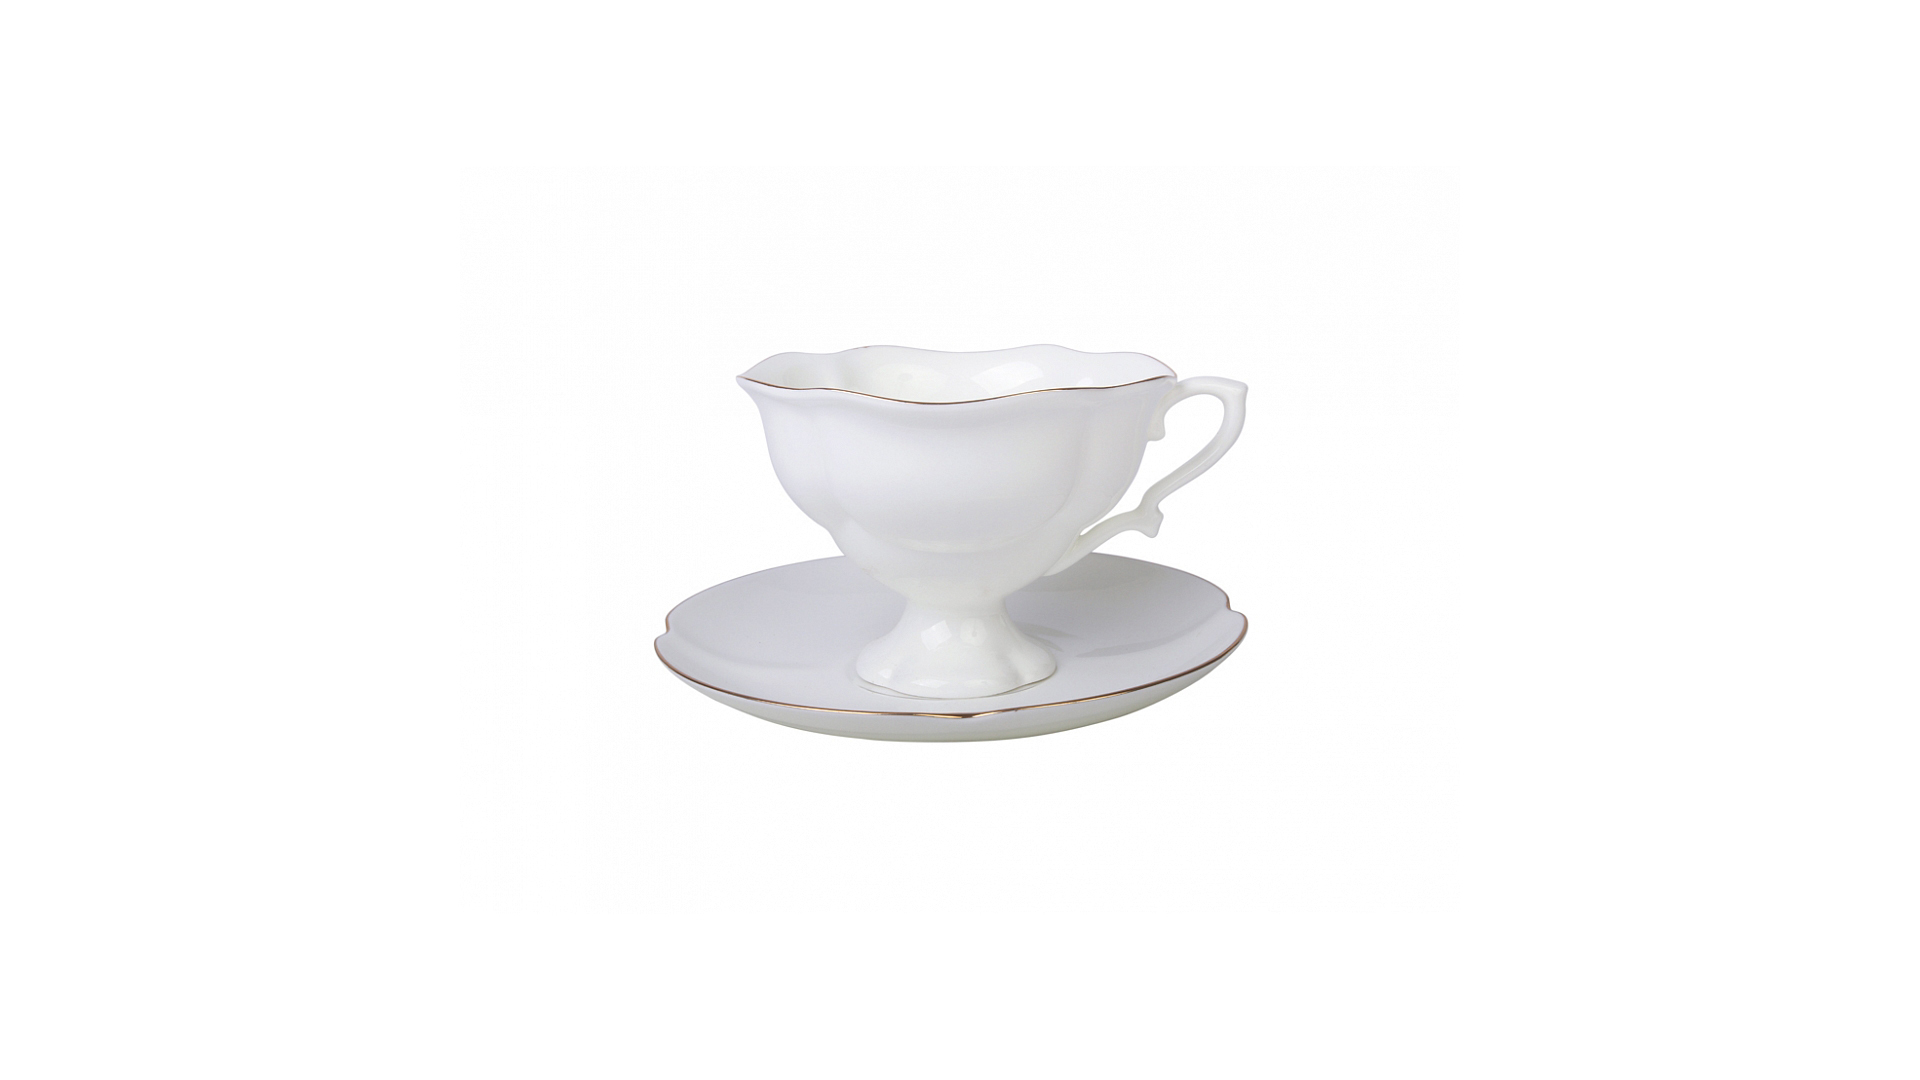 Чашка чайная с блюдцем ИФЗ Золотая лента.Наташа 220 мл, фарфор костяной